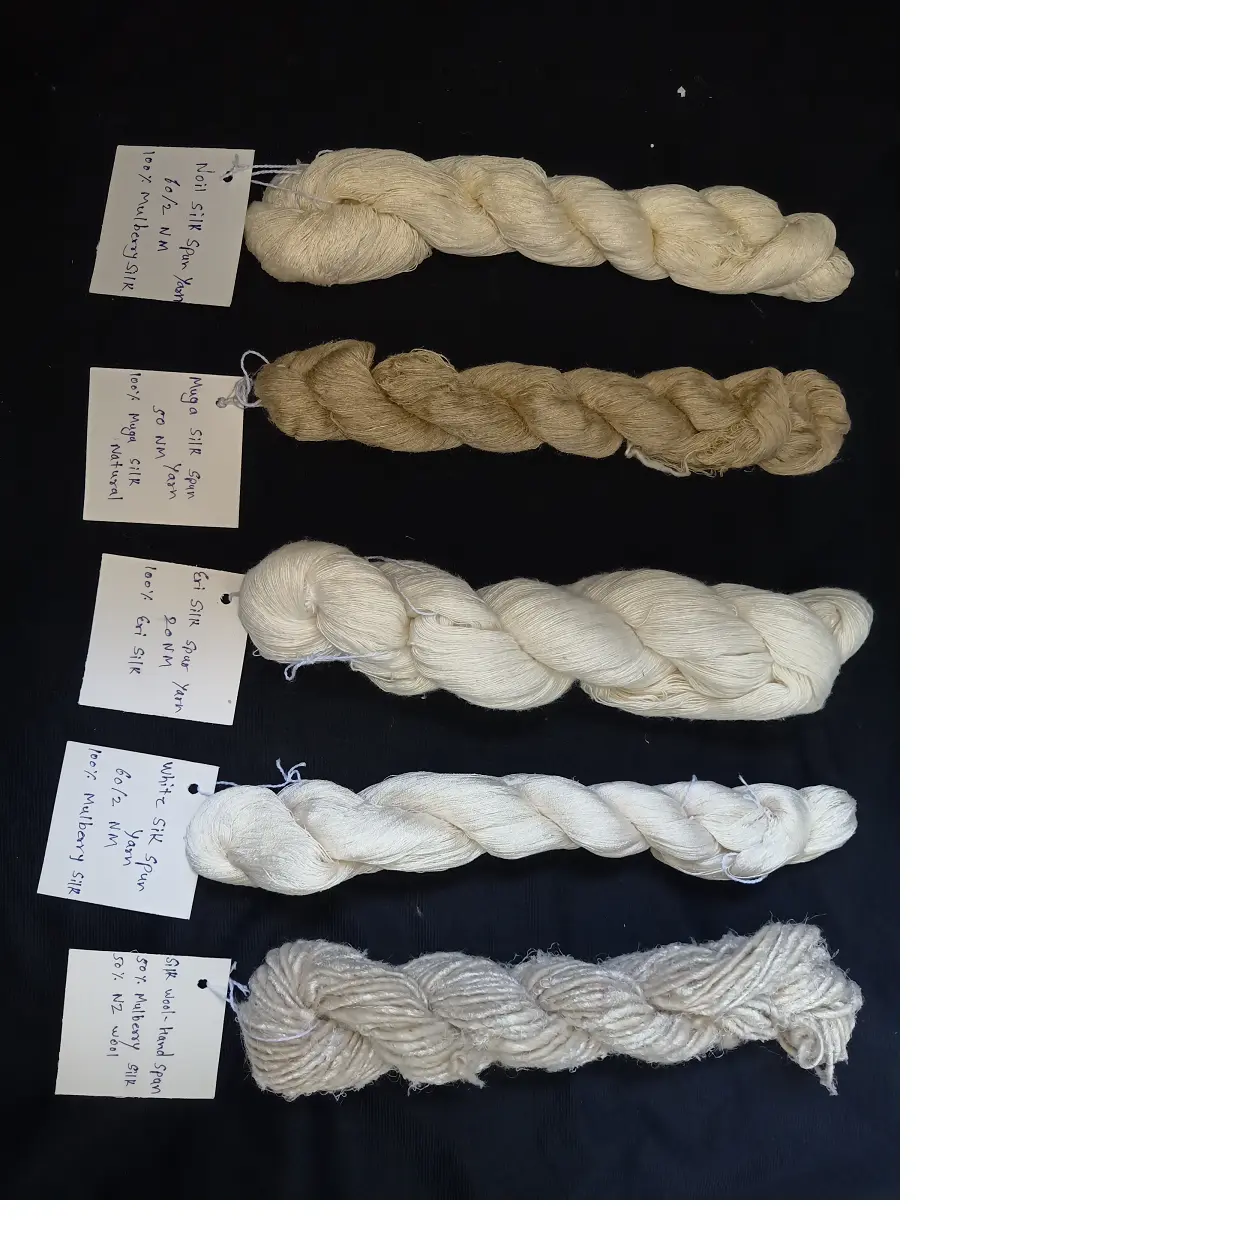 Filato di seta eri su misura, filato di seta muga, filato di seta noil e filato misto lana di lana in vari conteggi per maglieria